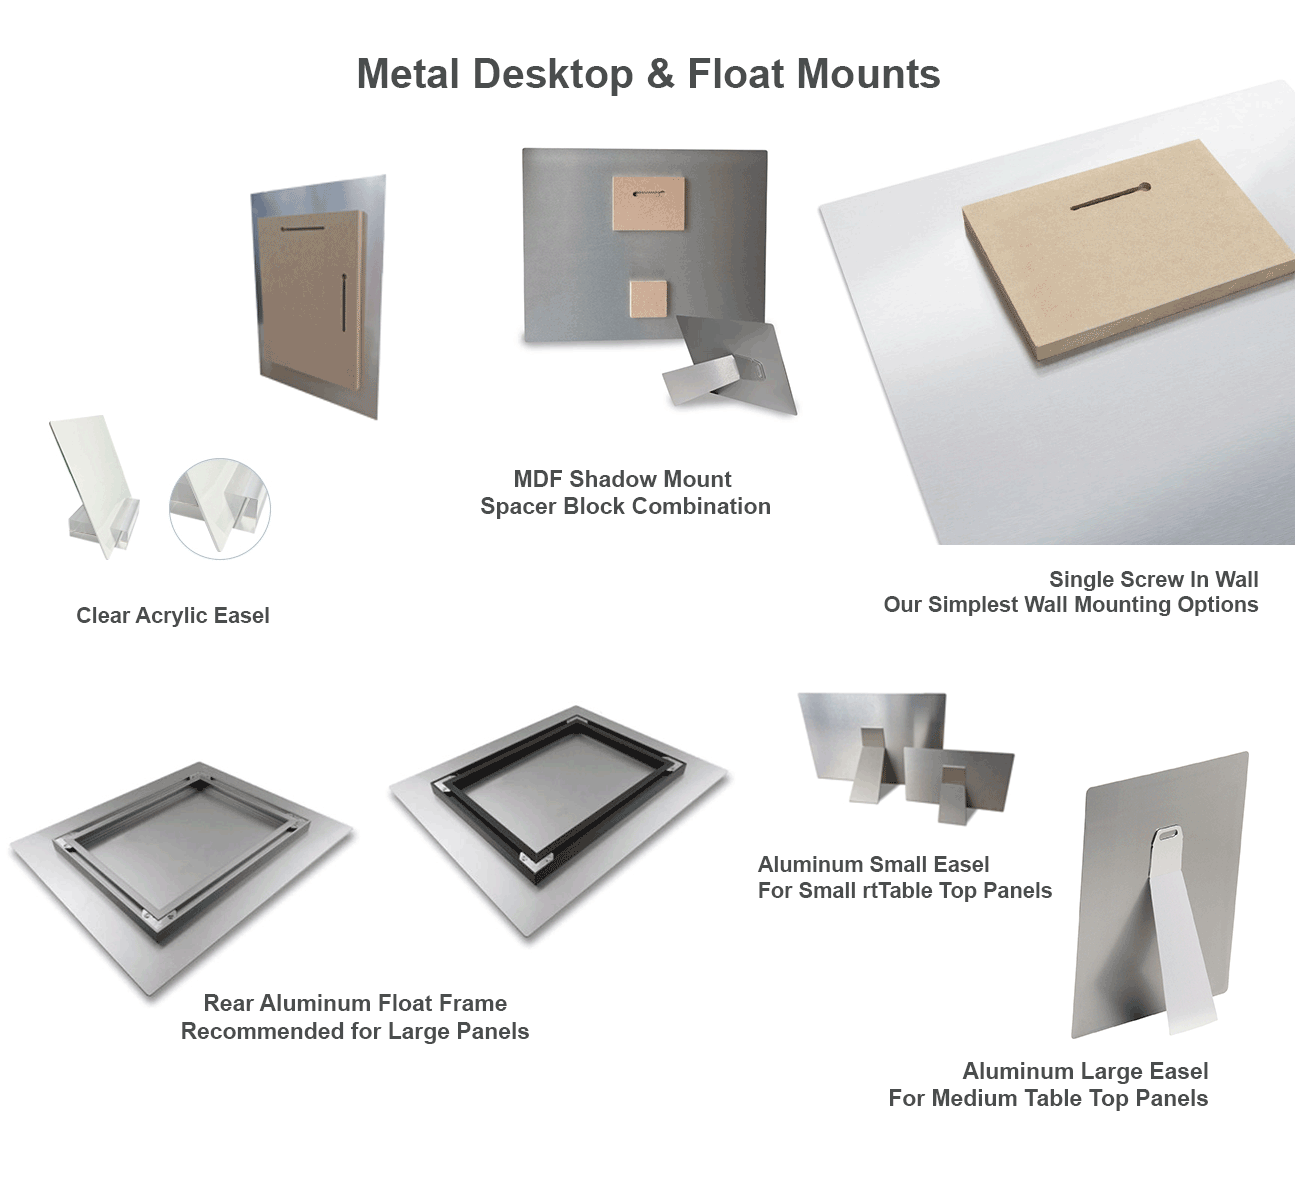 Metal desktop & float mounts